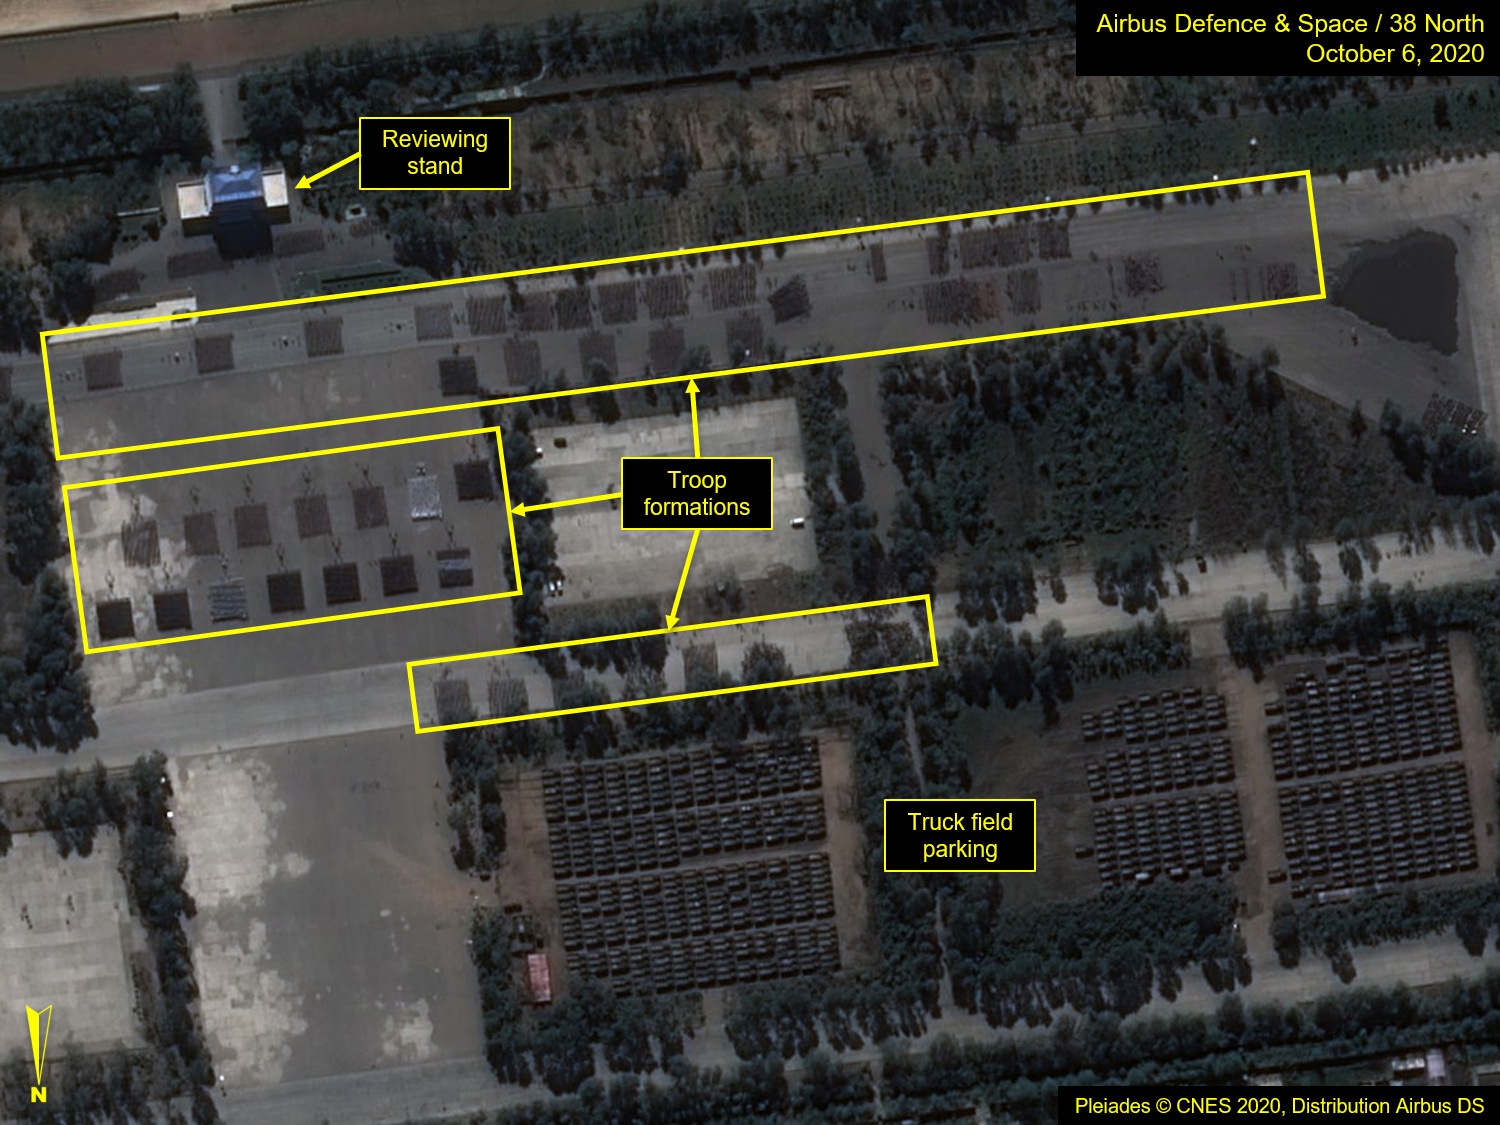 La imagen satelital muestra el Campo de Entrenamiento de Desfiles, donde es posible ver las formaciones de tropas practicando en una réplica de la Plaza Kim Il Sung (Airbus Defence & Space/38 North/Pleiades © CNES 2020 via REUTERS)